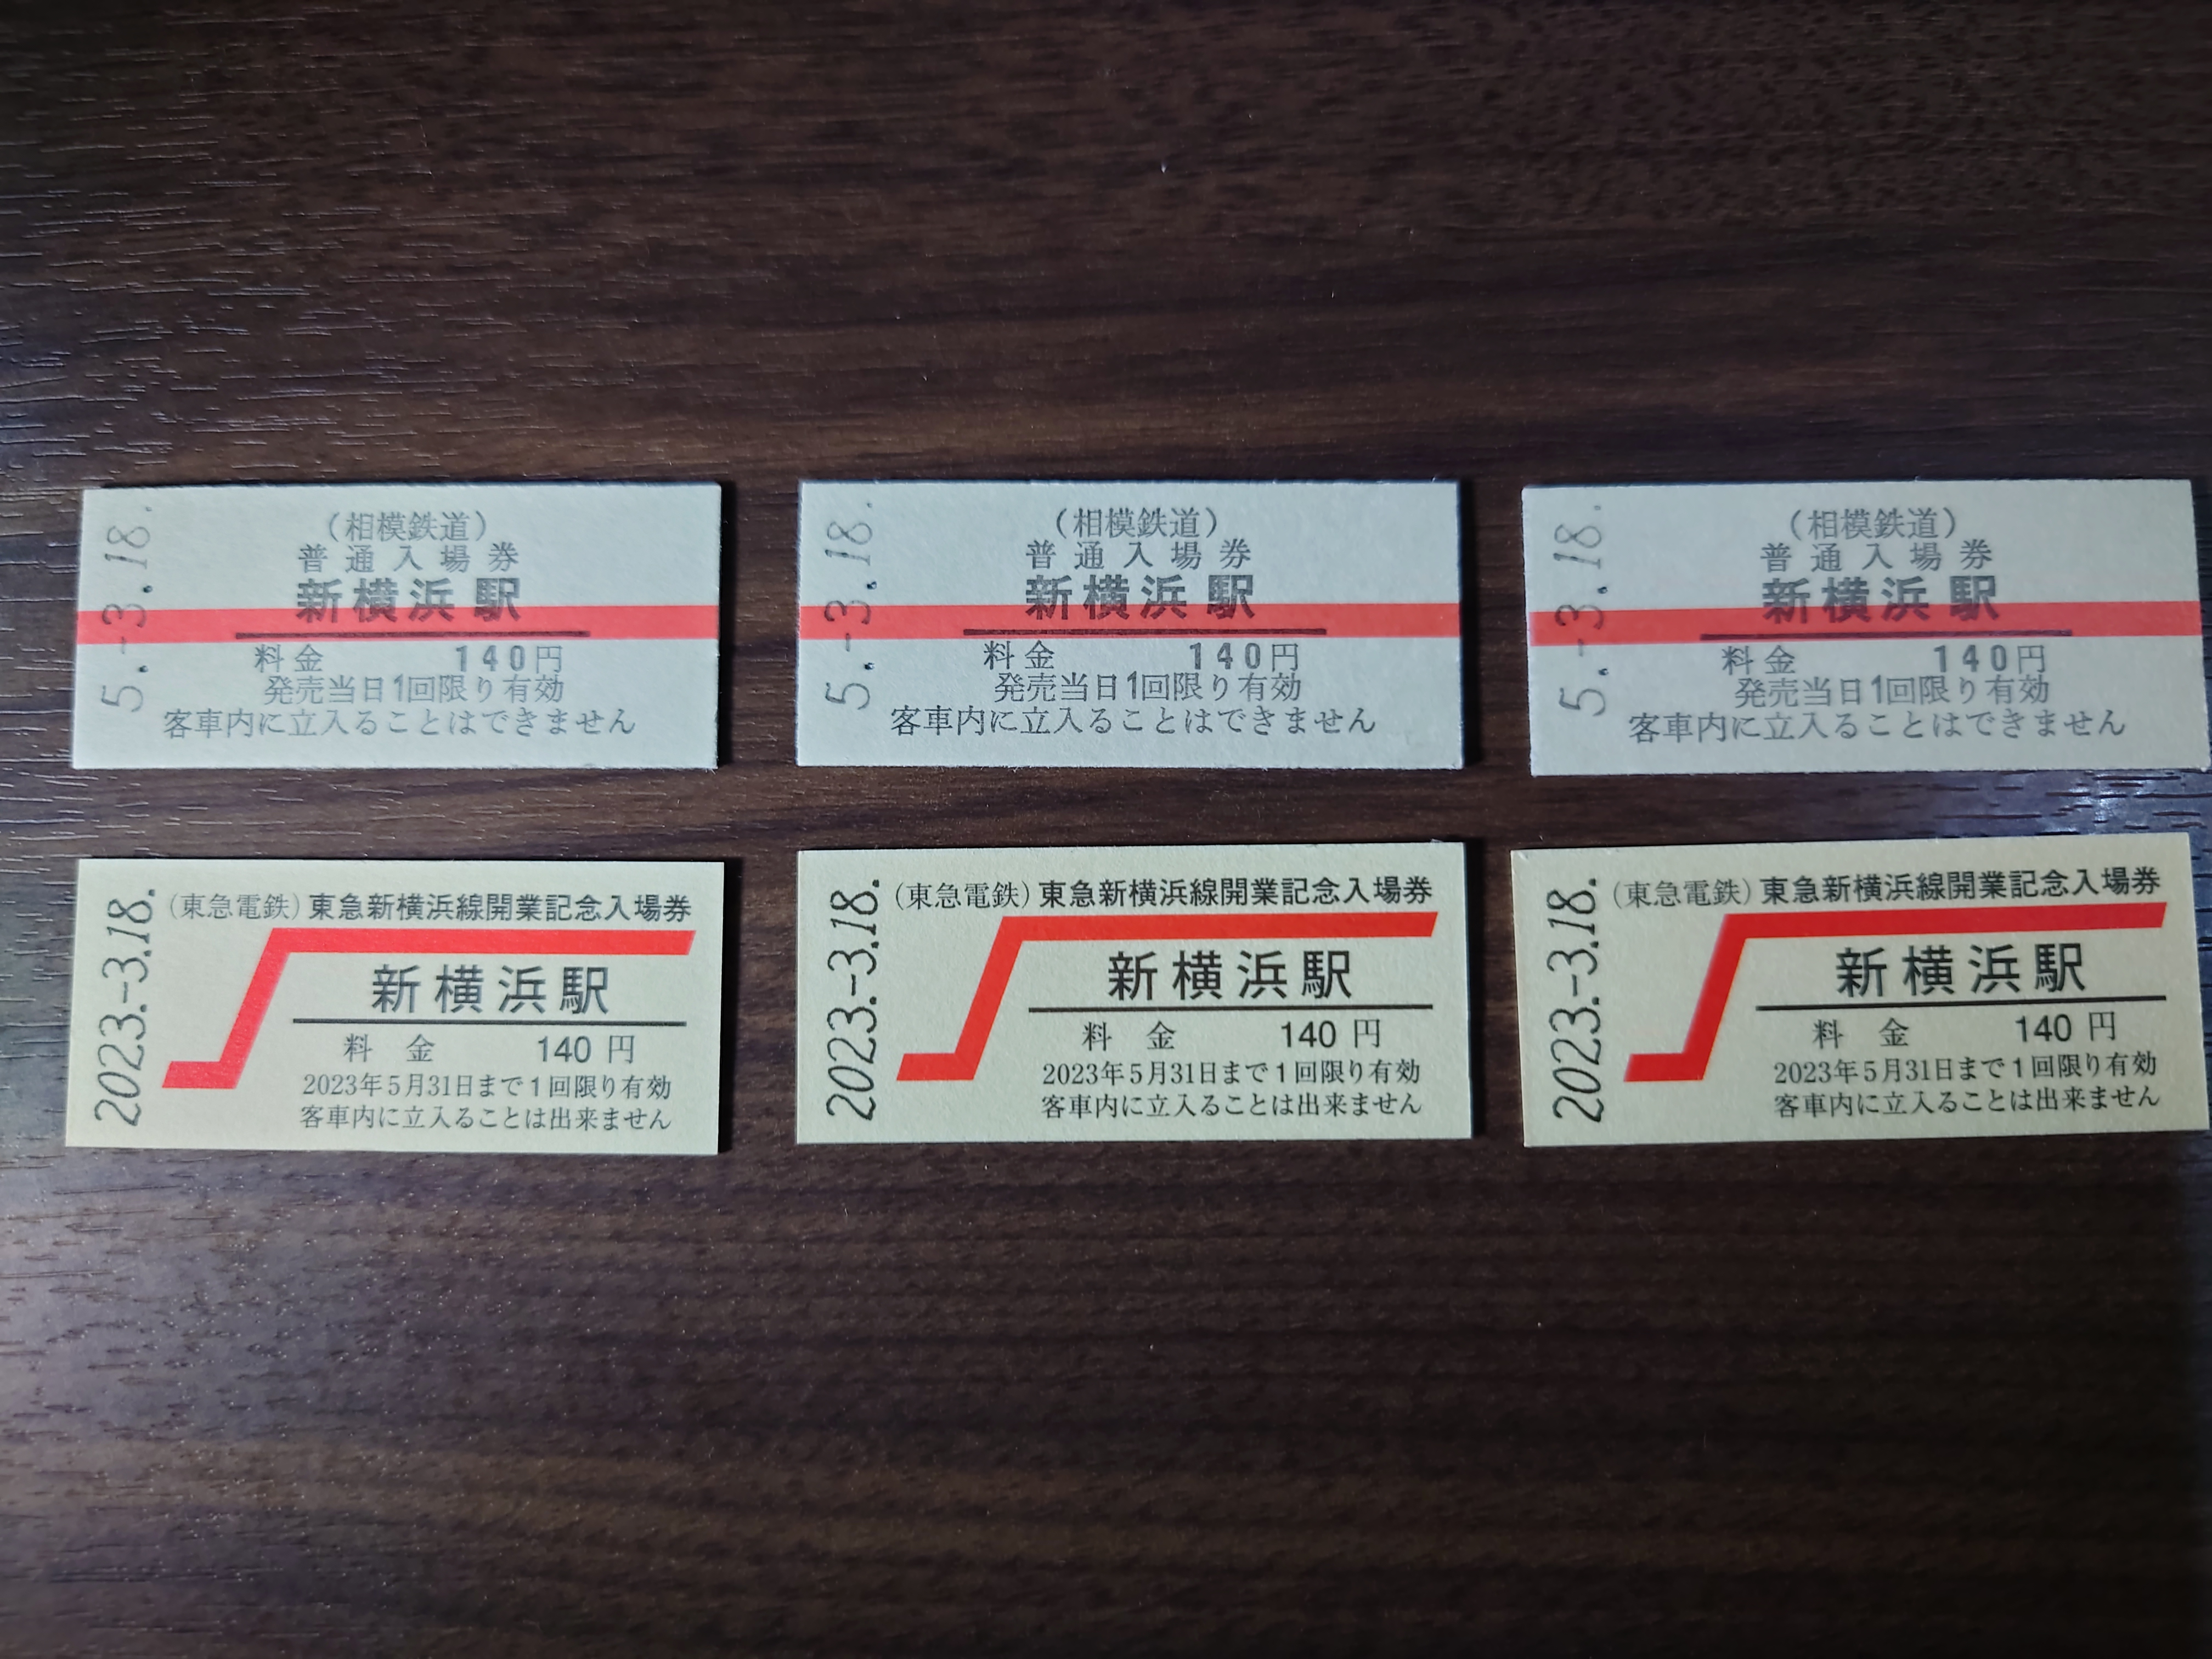 新横浜駅の入場券を3つずつ並べた様子